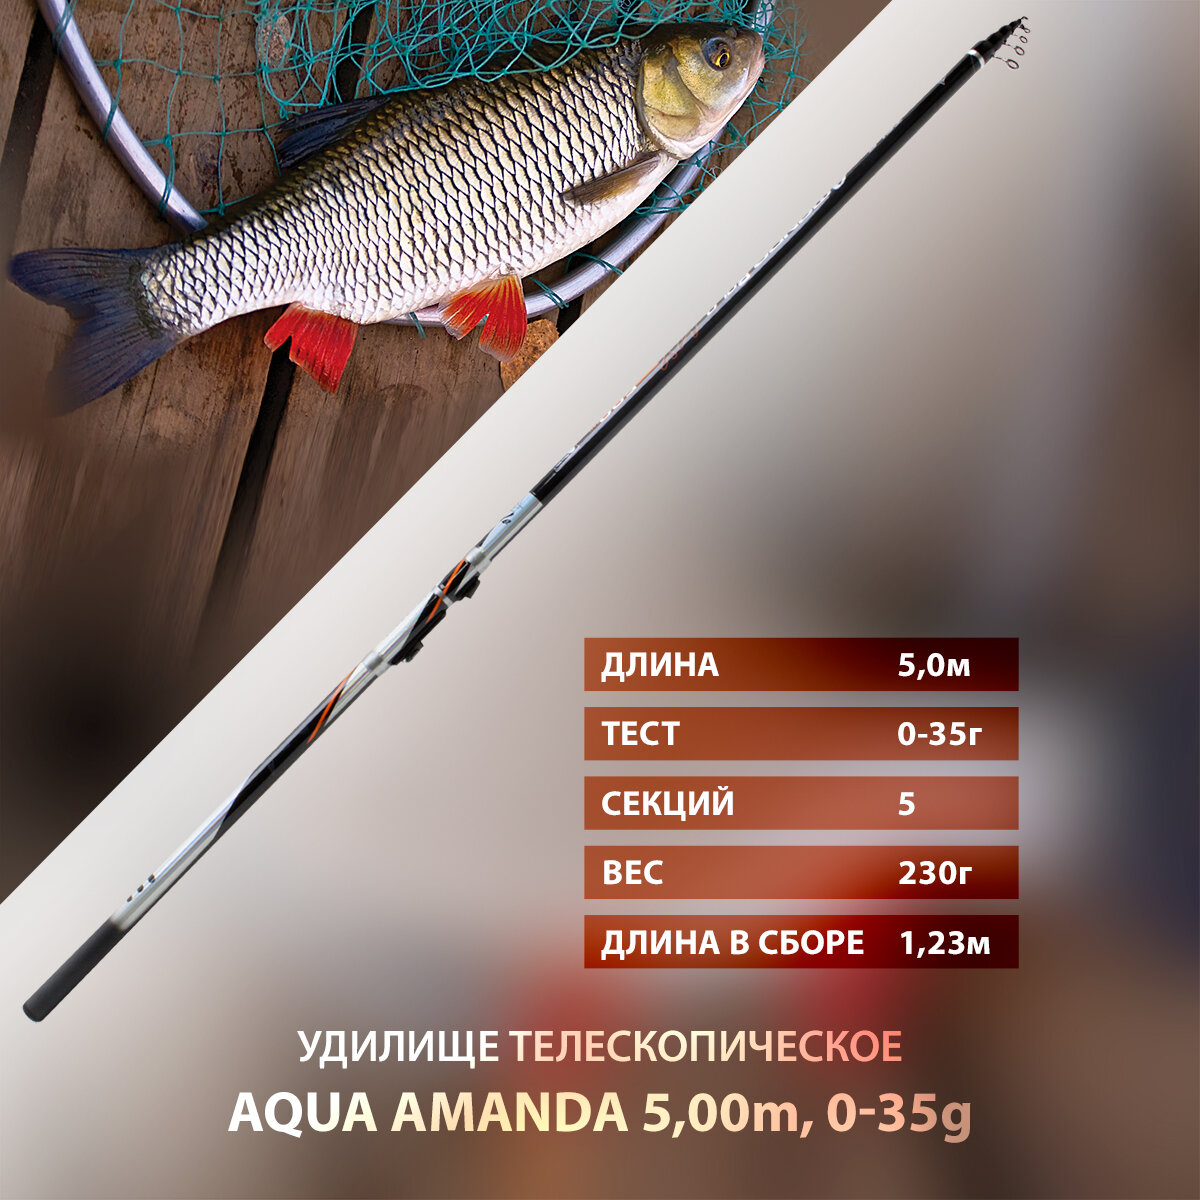 Удилище болонское телескопическое AQUA Amanda 5m 0-35g